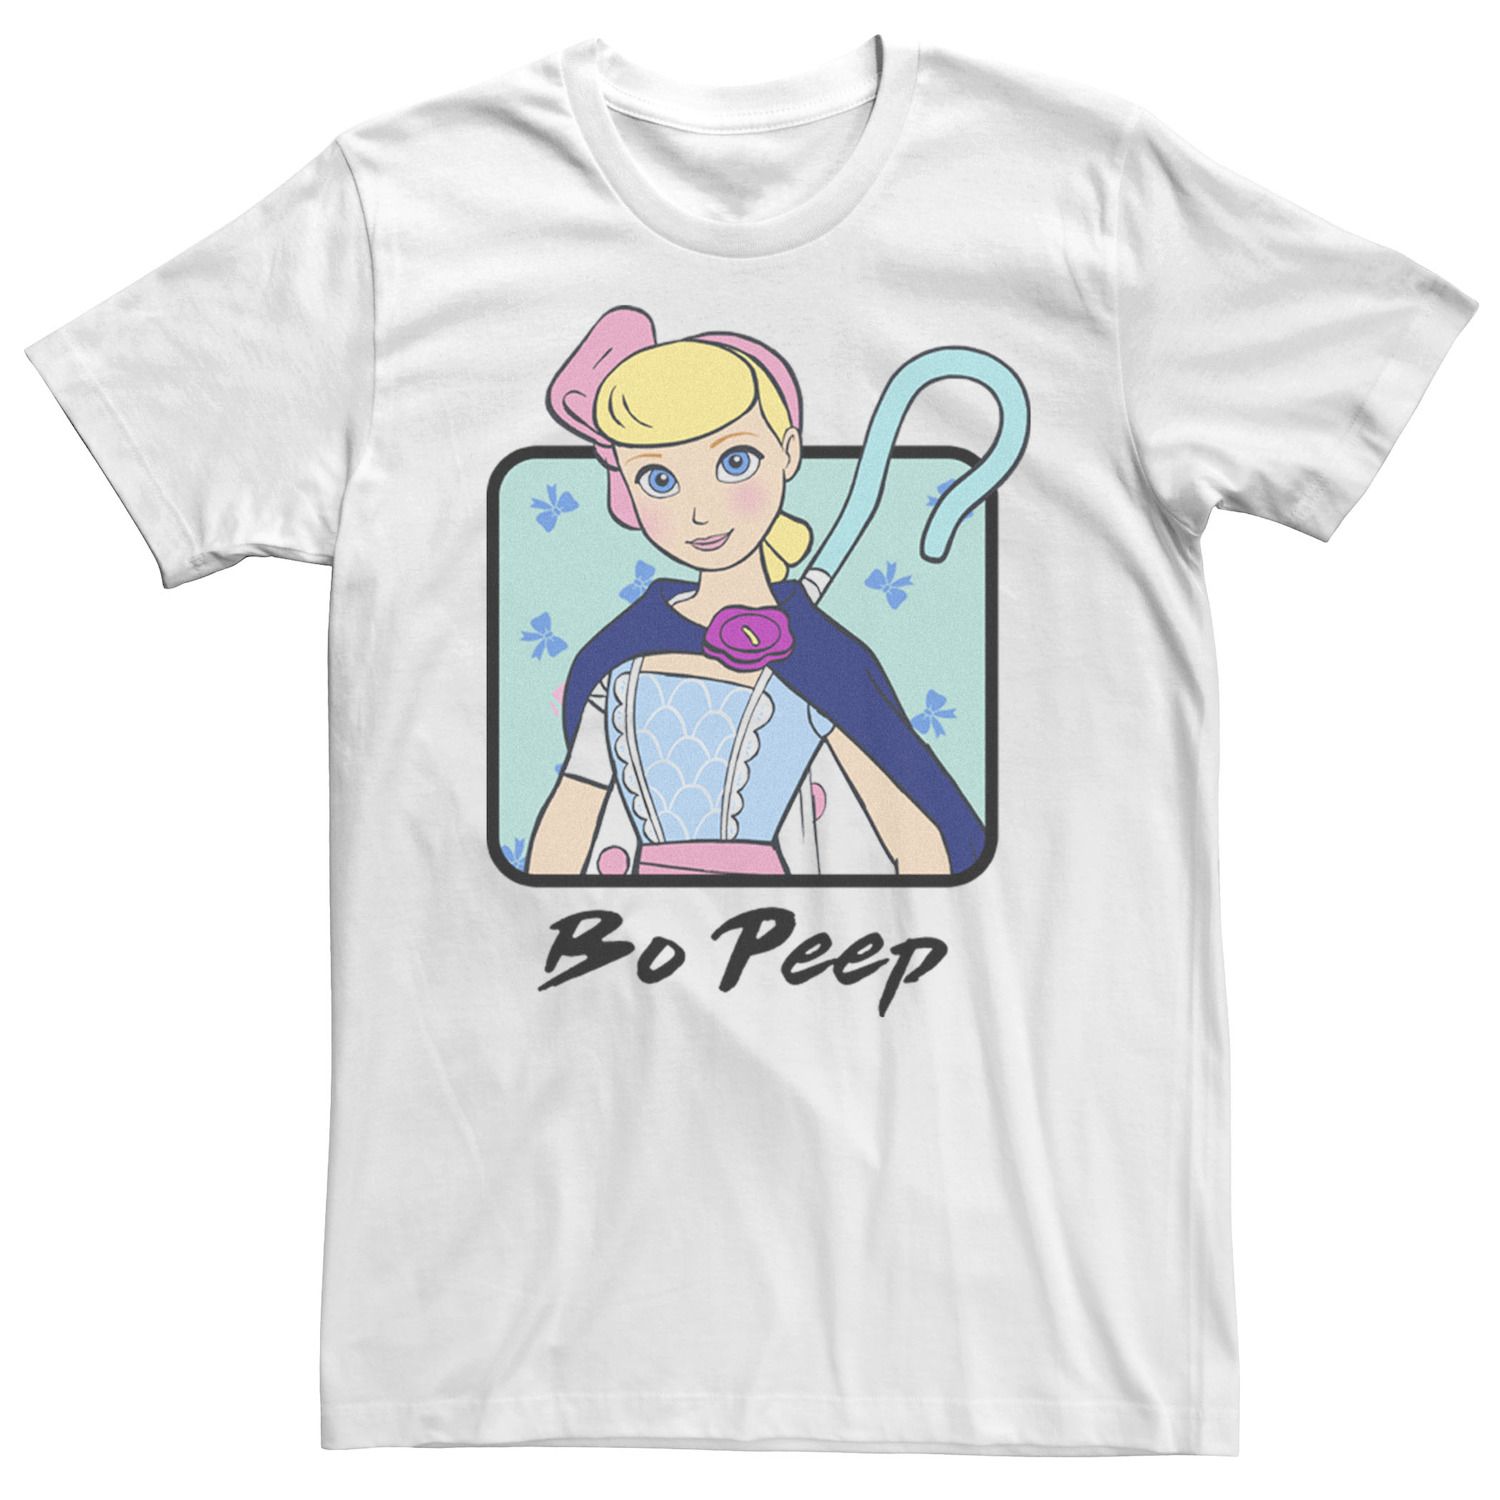 Мужская футболка Toy Story 4 Bo Peep с цветным бюстом и портретом Disney / Pixar брелок funko pocket pop disney toy story 4 bo peep